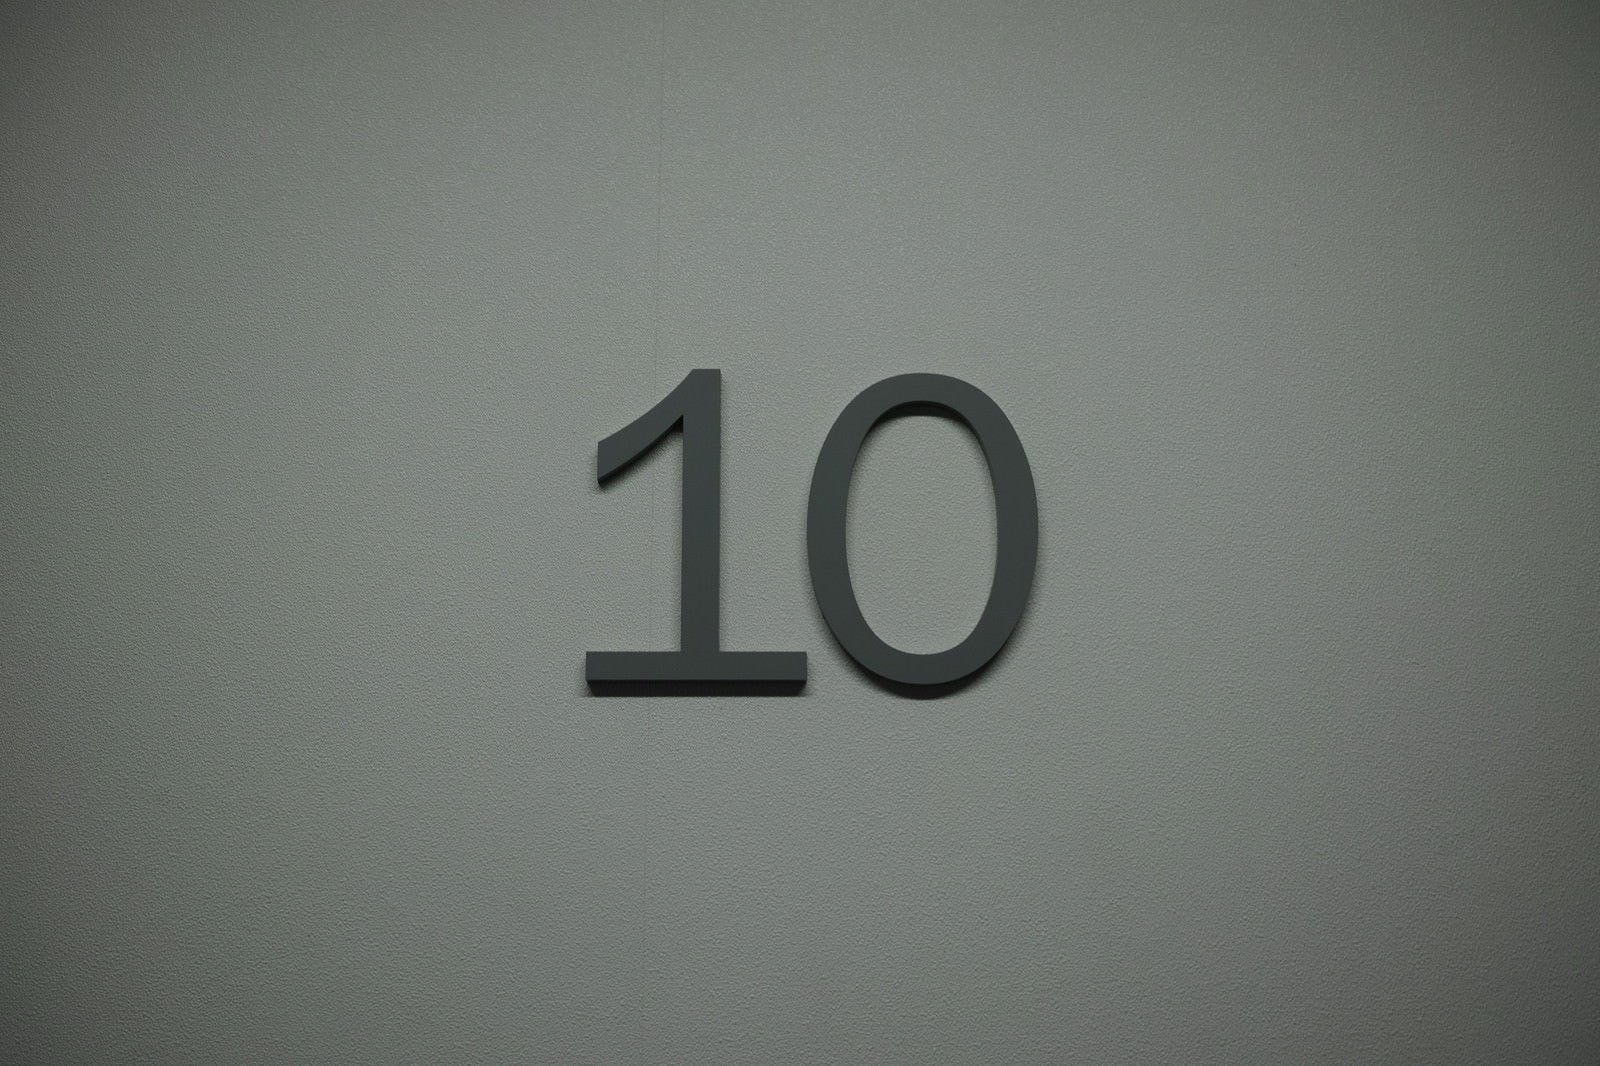 「壁の「10」」の写真